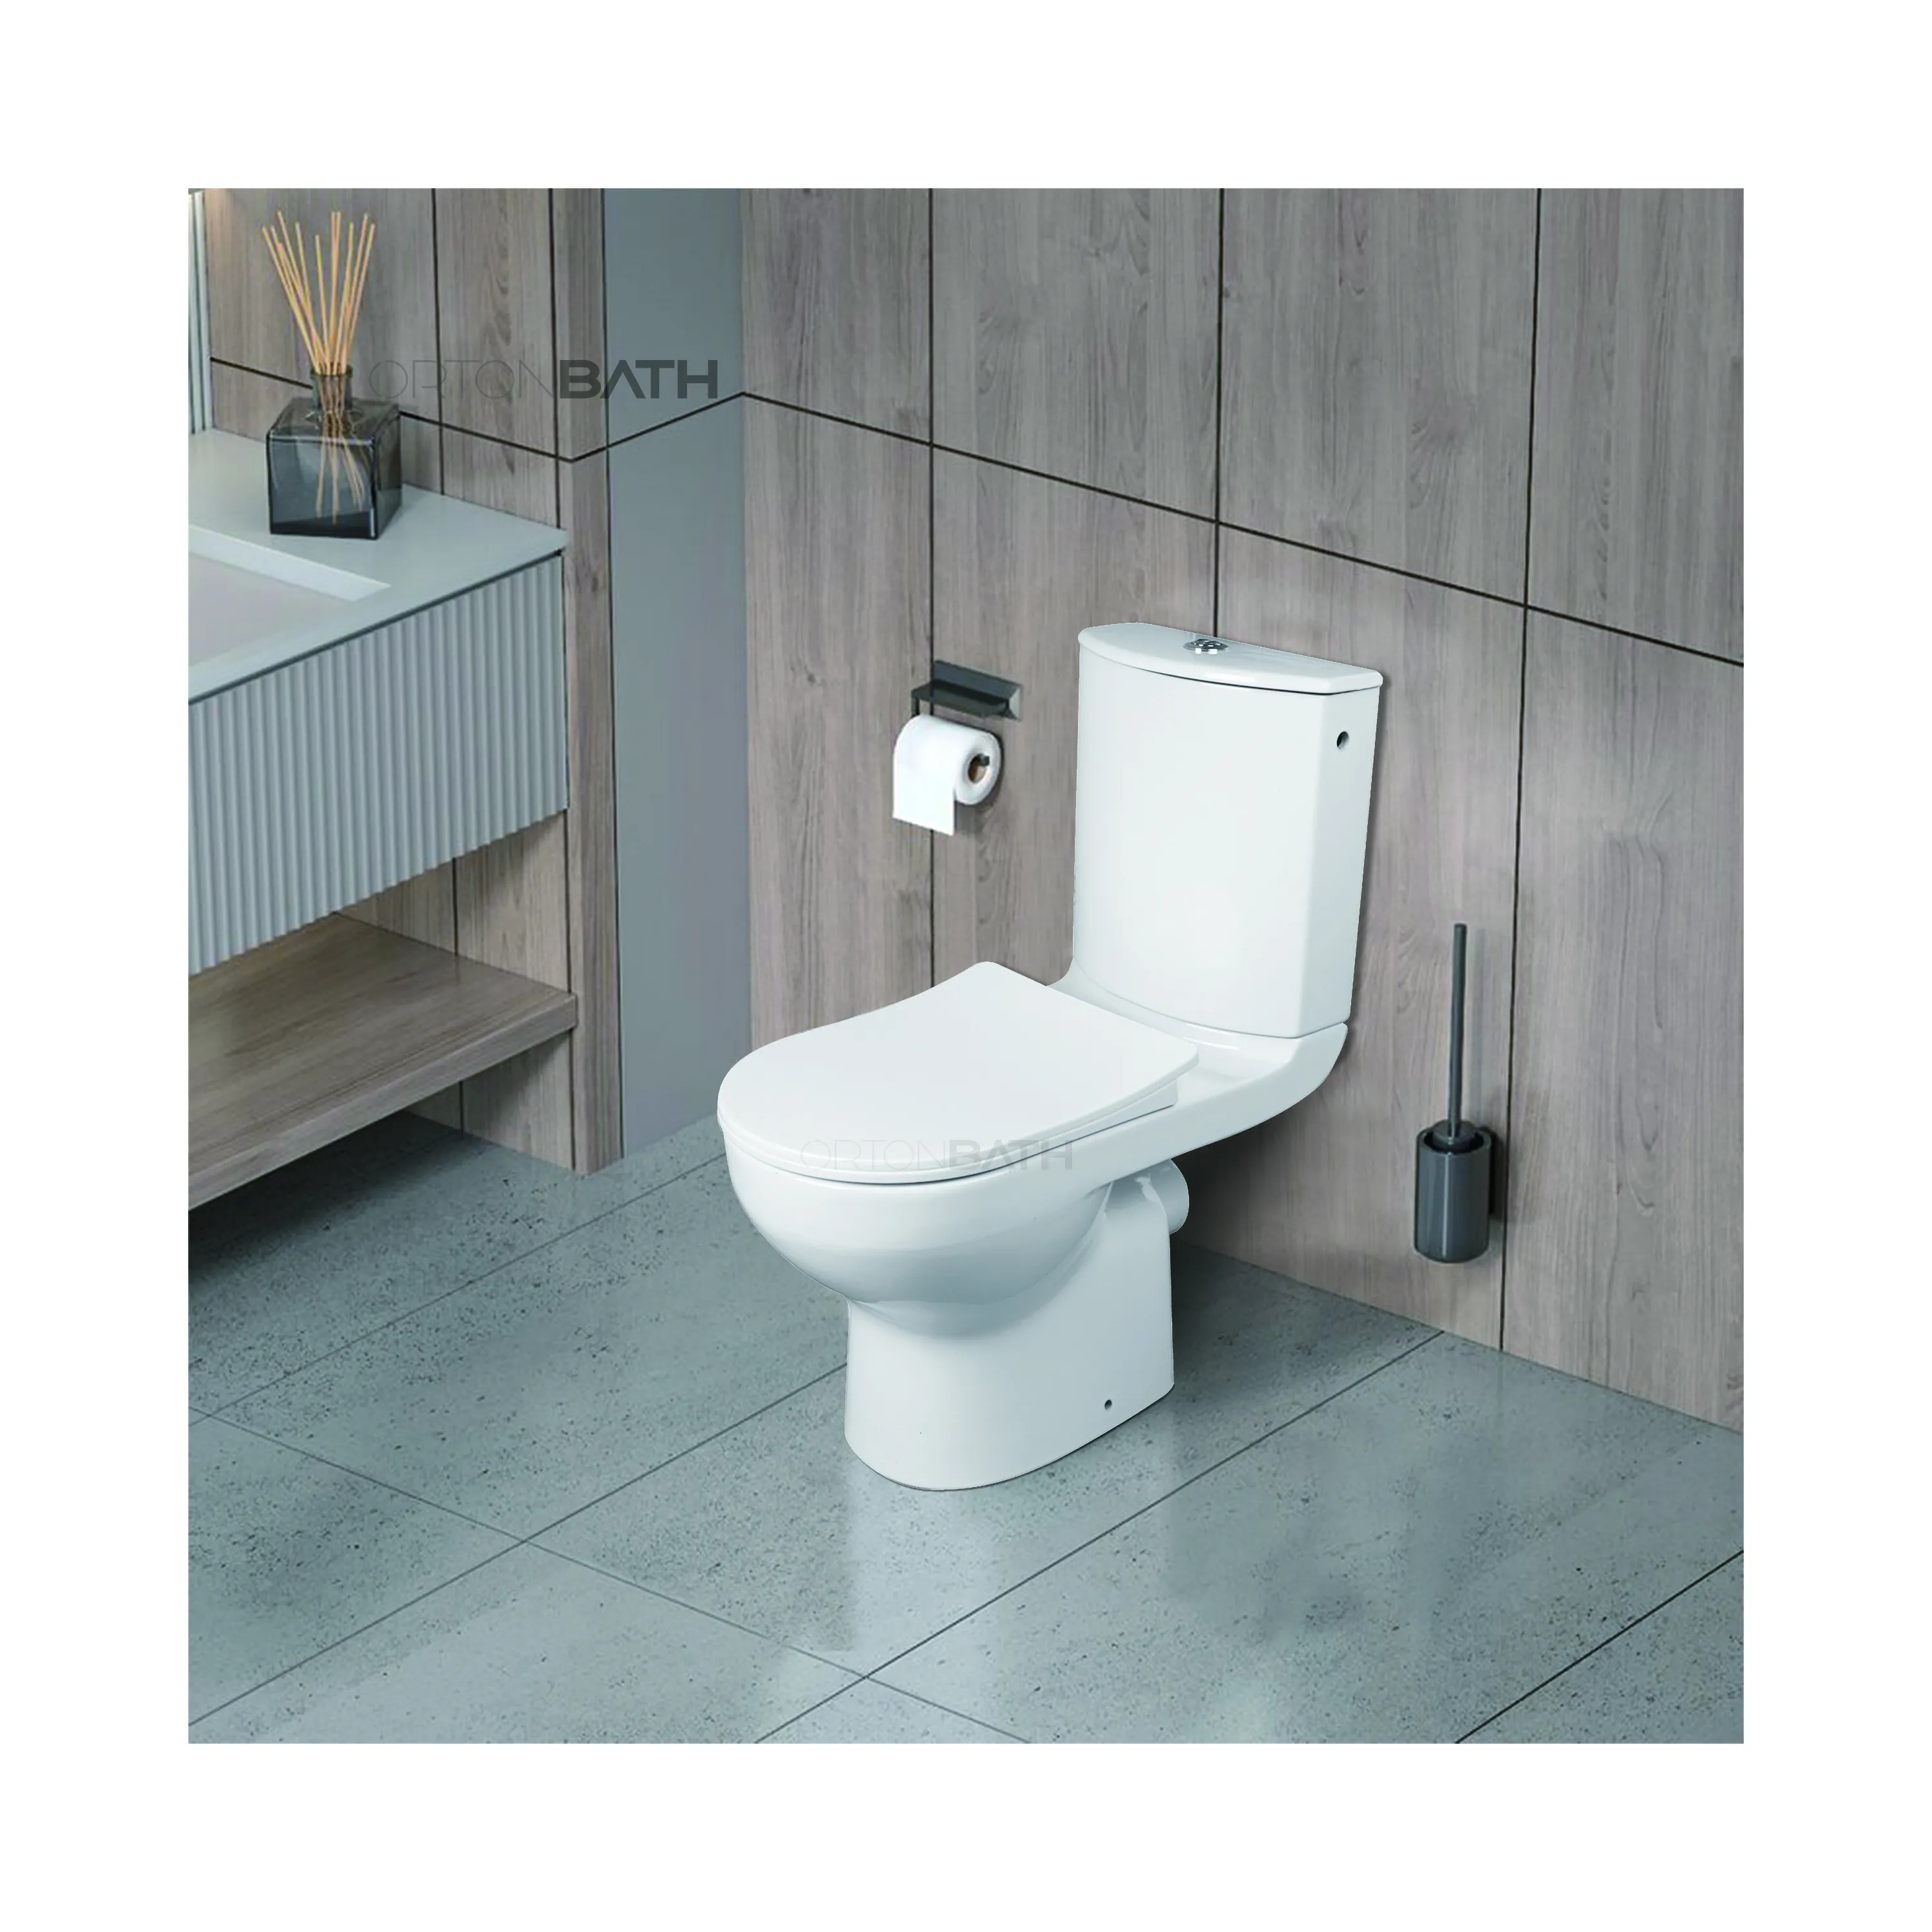 ORTONBATH EU casroma Rusia keramik toto toilet kamar mandi dua bagian toilet lemari air dua bagian kursi toilet pp